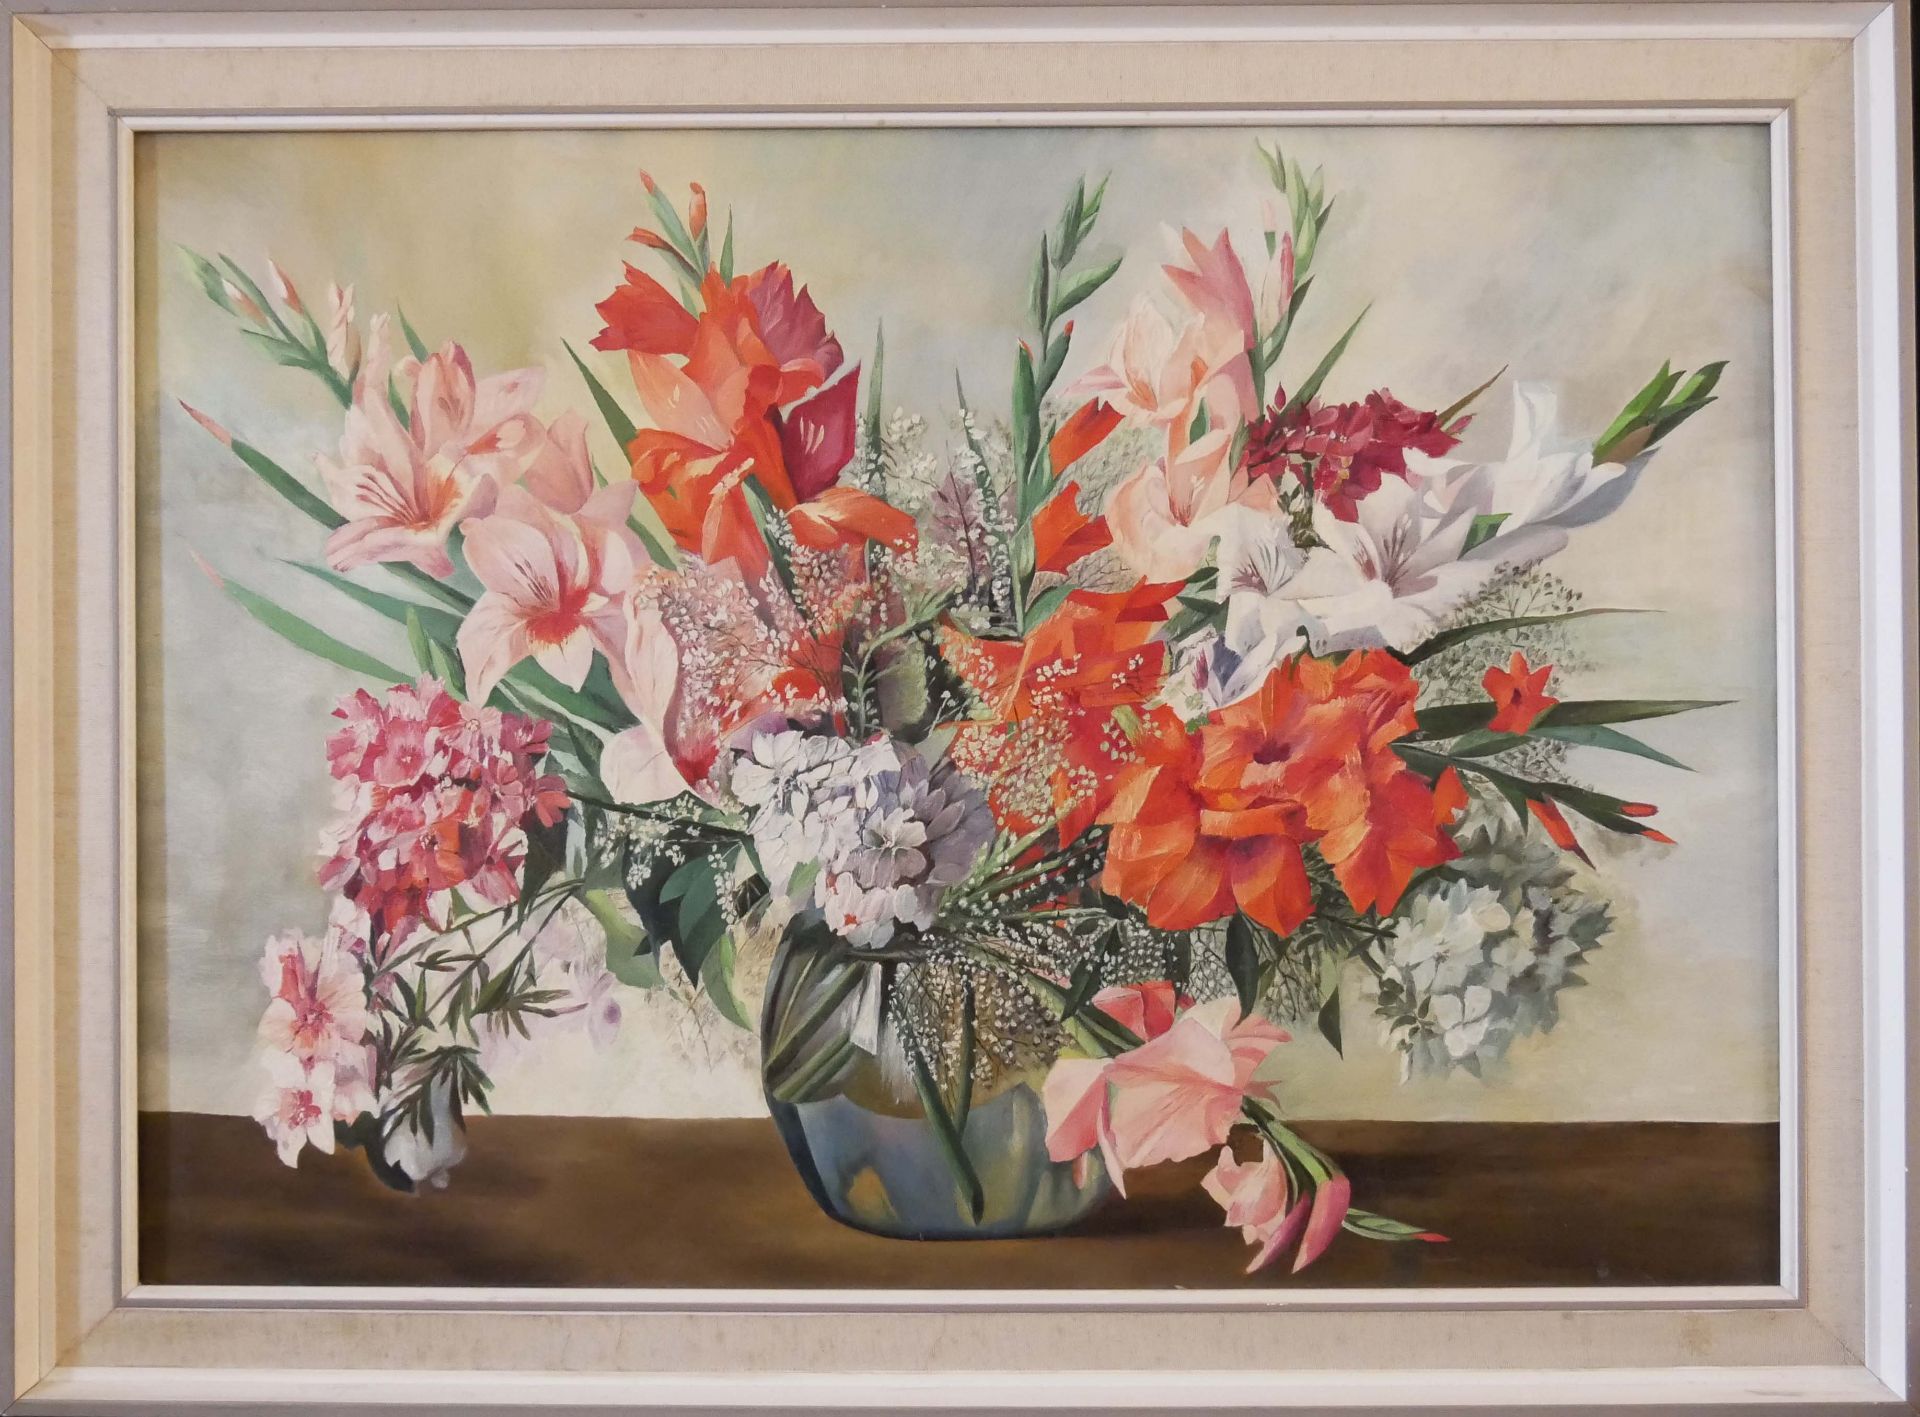 unbekannter Künstler, Ölgemälde auf Leinwand "Blumenstrauß", gerahmt. Länge ca. 79 cm, Höhe ca. 59